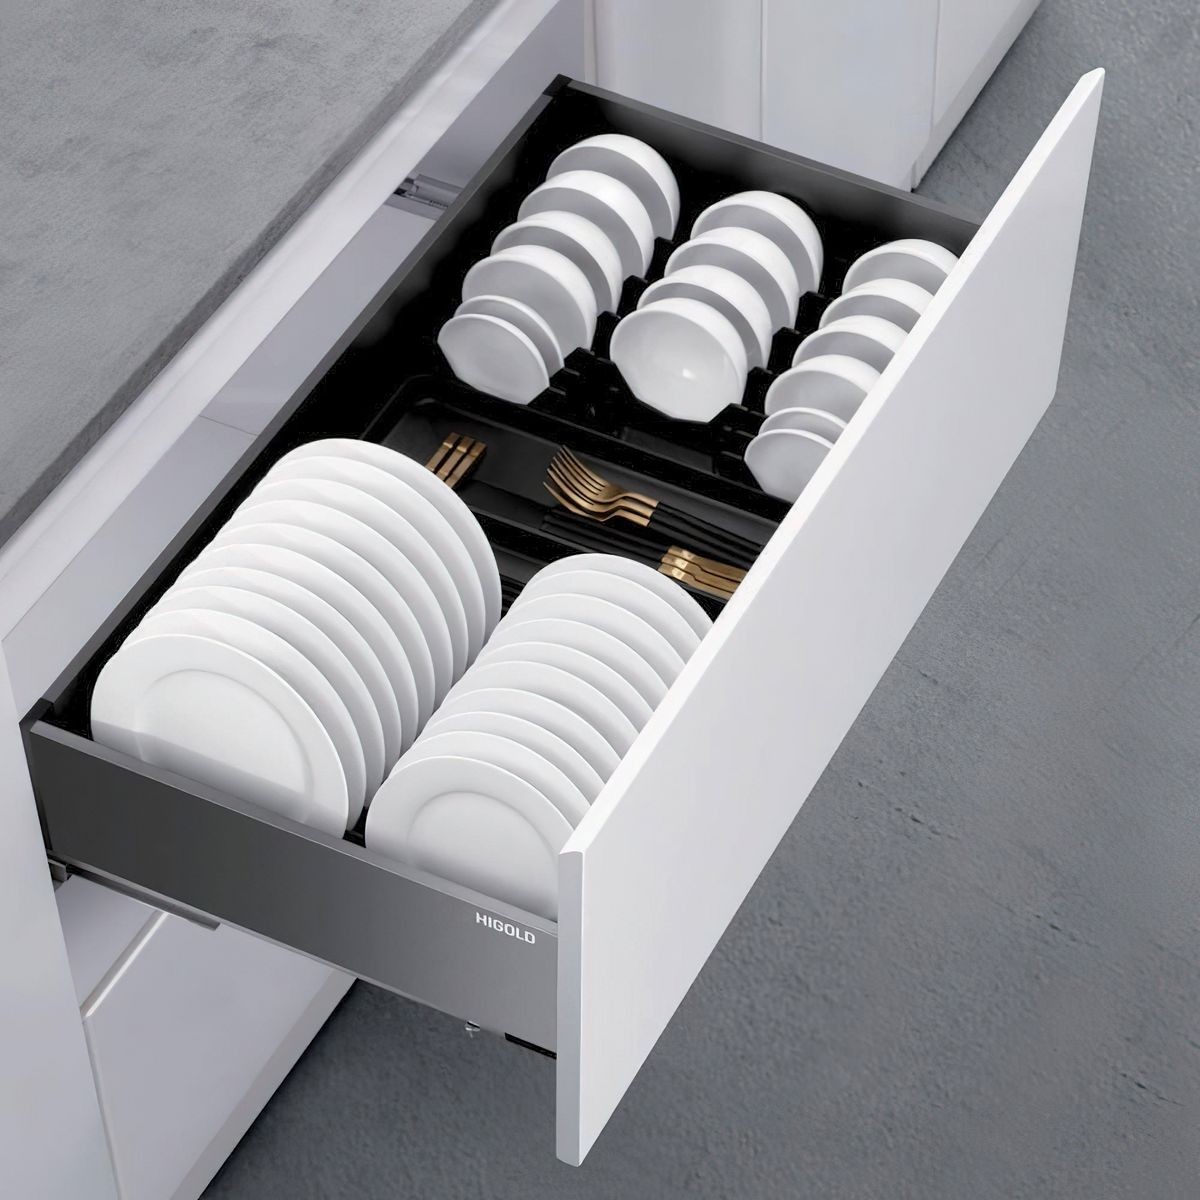 https://archipro.com.au/images/cdn-images/width=3840,quality=90/images/s1/product/kitchen-drawer-organisers/shearer-2-multipurpose-pull-out-drawer-organiser1-1.jpg/eyJlZGl0cyI6W3sidHlwZSI6InpwY2YiLCJvcHRpb25zIjp7ImJveFdpZHRoIjoxMjAwLCJib3hIZWlnaHQiOjEyMDAsInpvb21XaWR0aCI6MTIwMCwic2Nyb2xsUG9zWCI6NTAsInNjcm9sbFBvc1kiOjUwLCJiYWNrZ3JvdW5kIjoiI2U4ZTllYiIsImZpbHRlciI6MH19LHsidHlwZSI6ImZsYXR0ZW4iLCJvcHRpb25zIjp7ImJhY2tncm91bmQiOiIjZmZmZmZmIn19XSwicXVhbGl0eSI6ODcsInRvRm9ybWF0IjoianBnIn0=